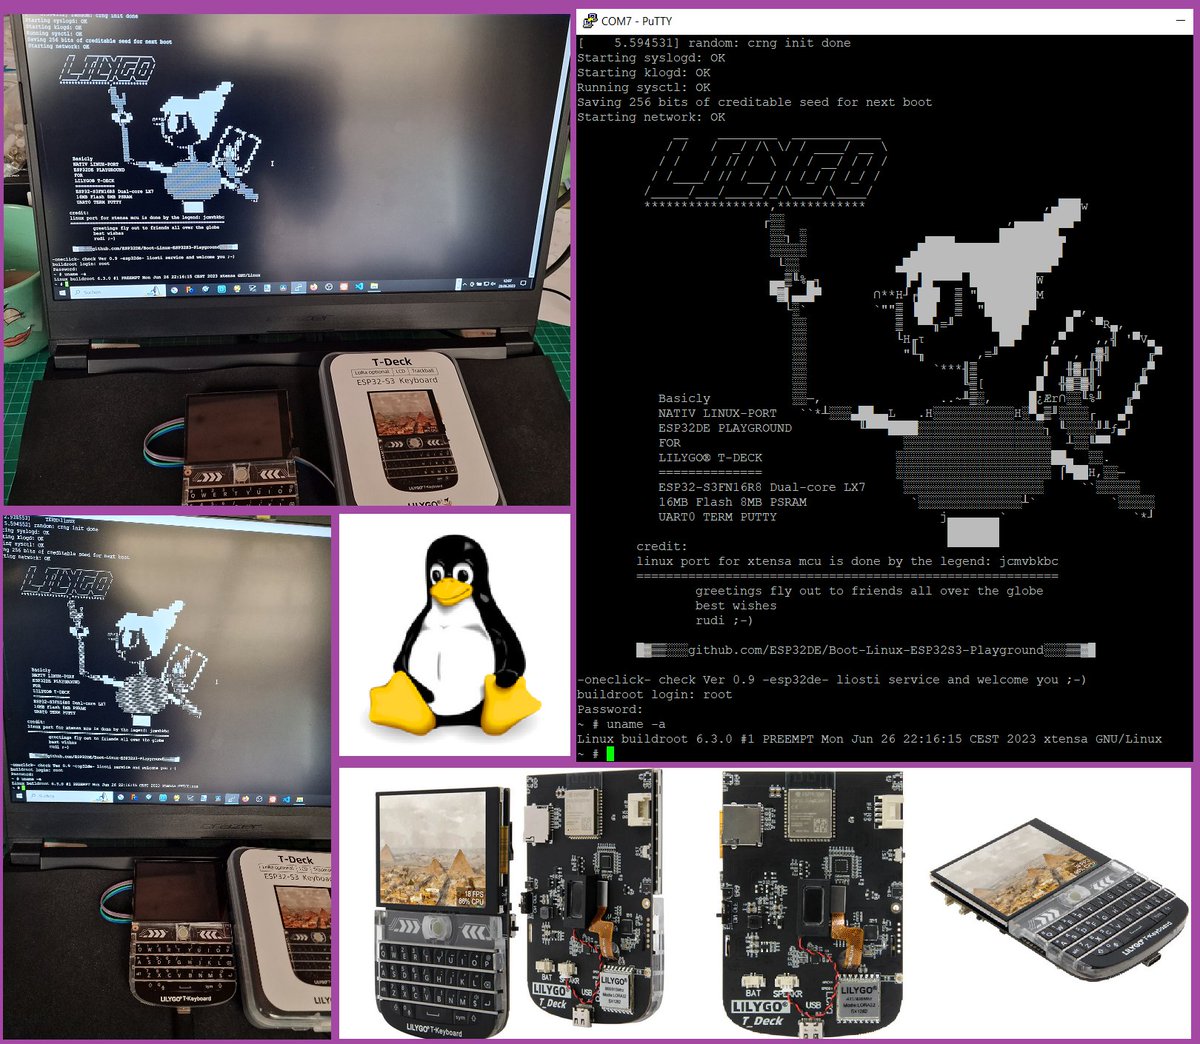 #jcmvbkbc #Xtensa #Linux Port #ESP32 S3 
runs on #lilygo T-Deck 
ℹ️github.com/ESP32DE/Boot-L…